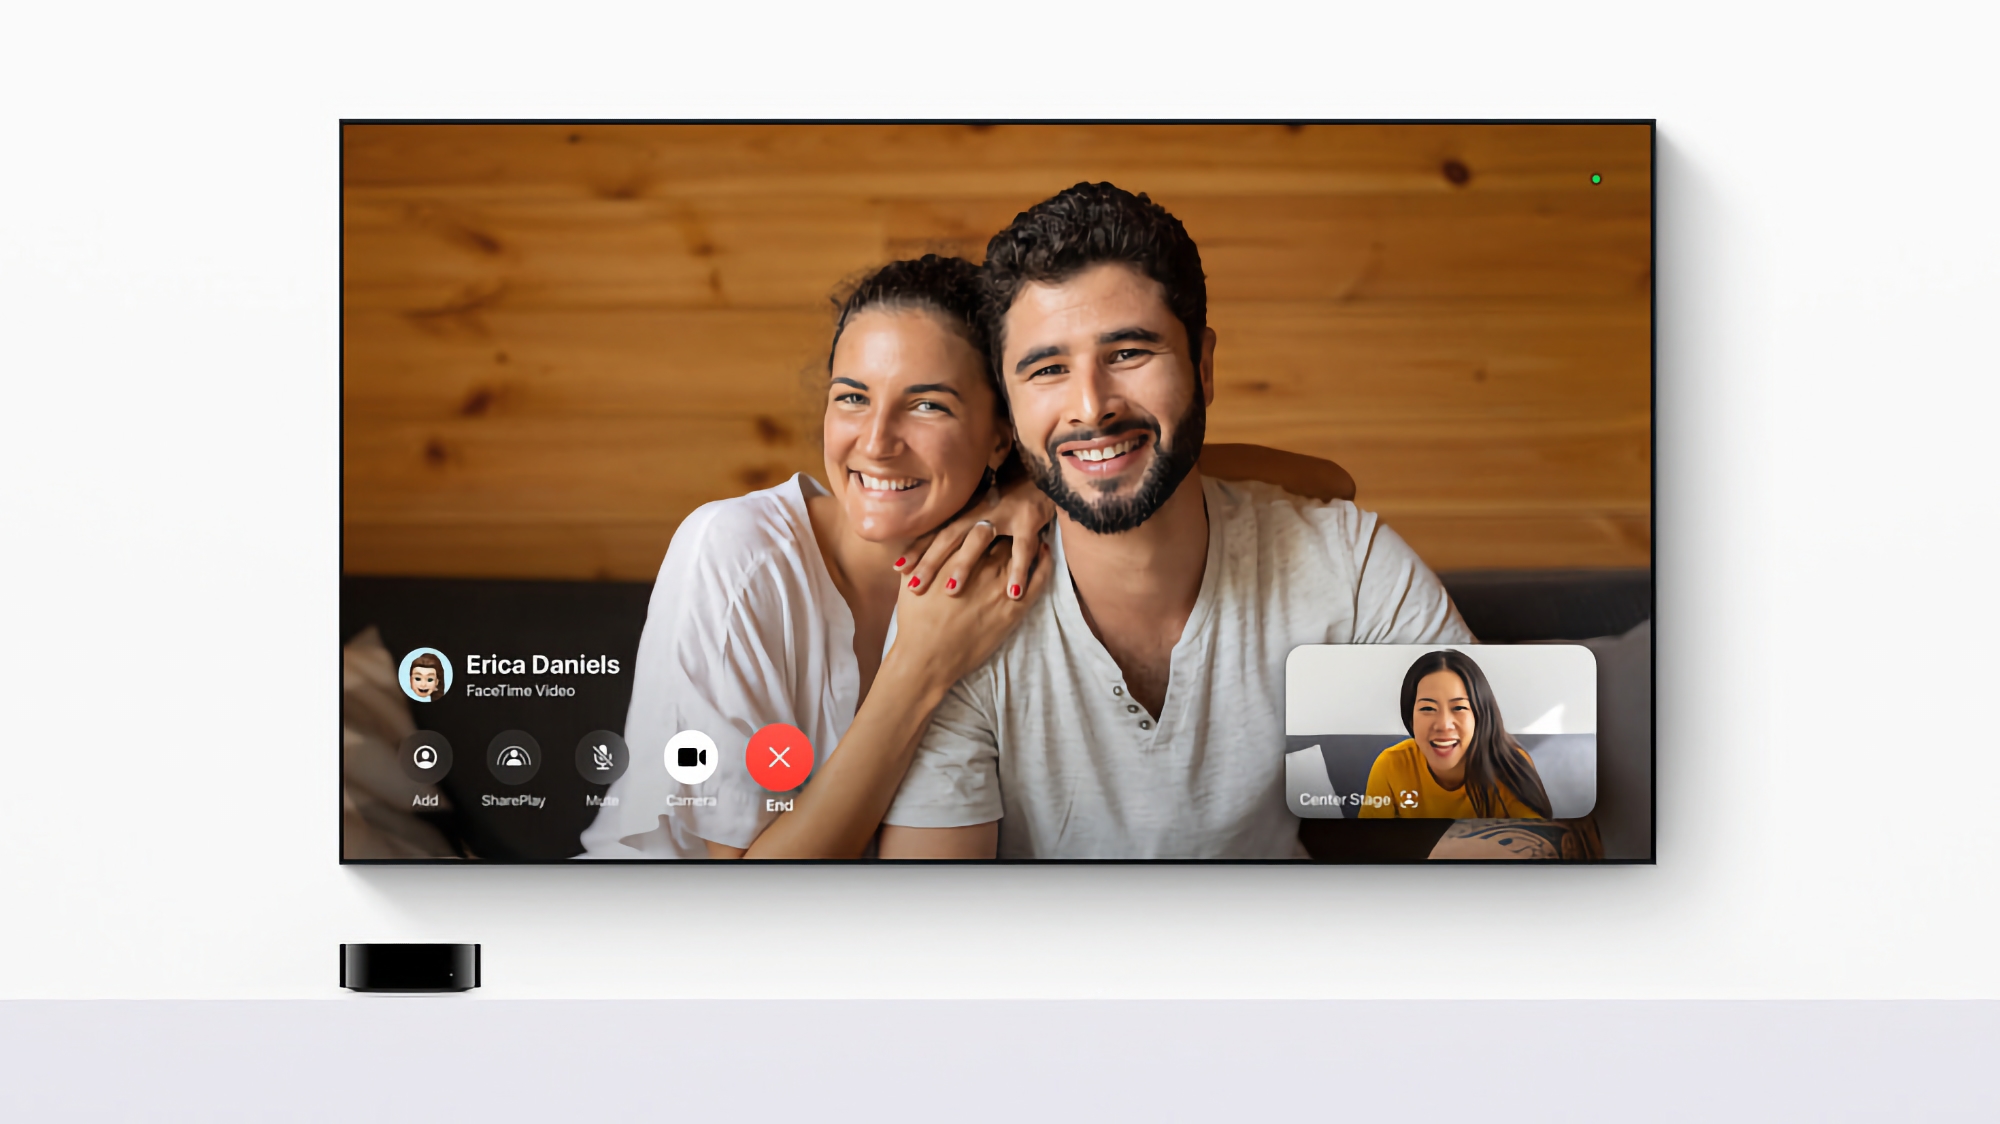 Bloomberg: la futura versión del Apple TV podría incorporar una cámara para videollamadas FaceTime